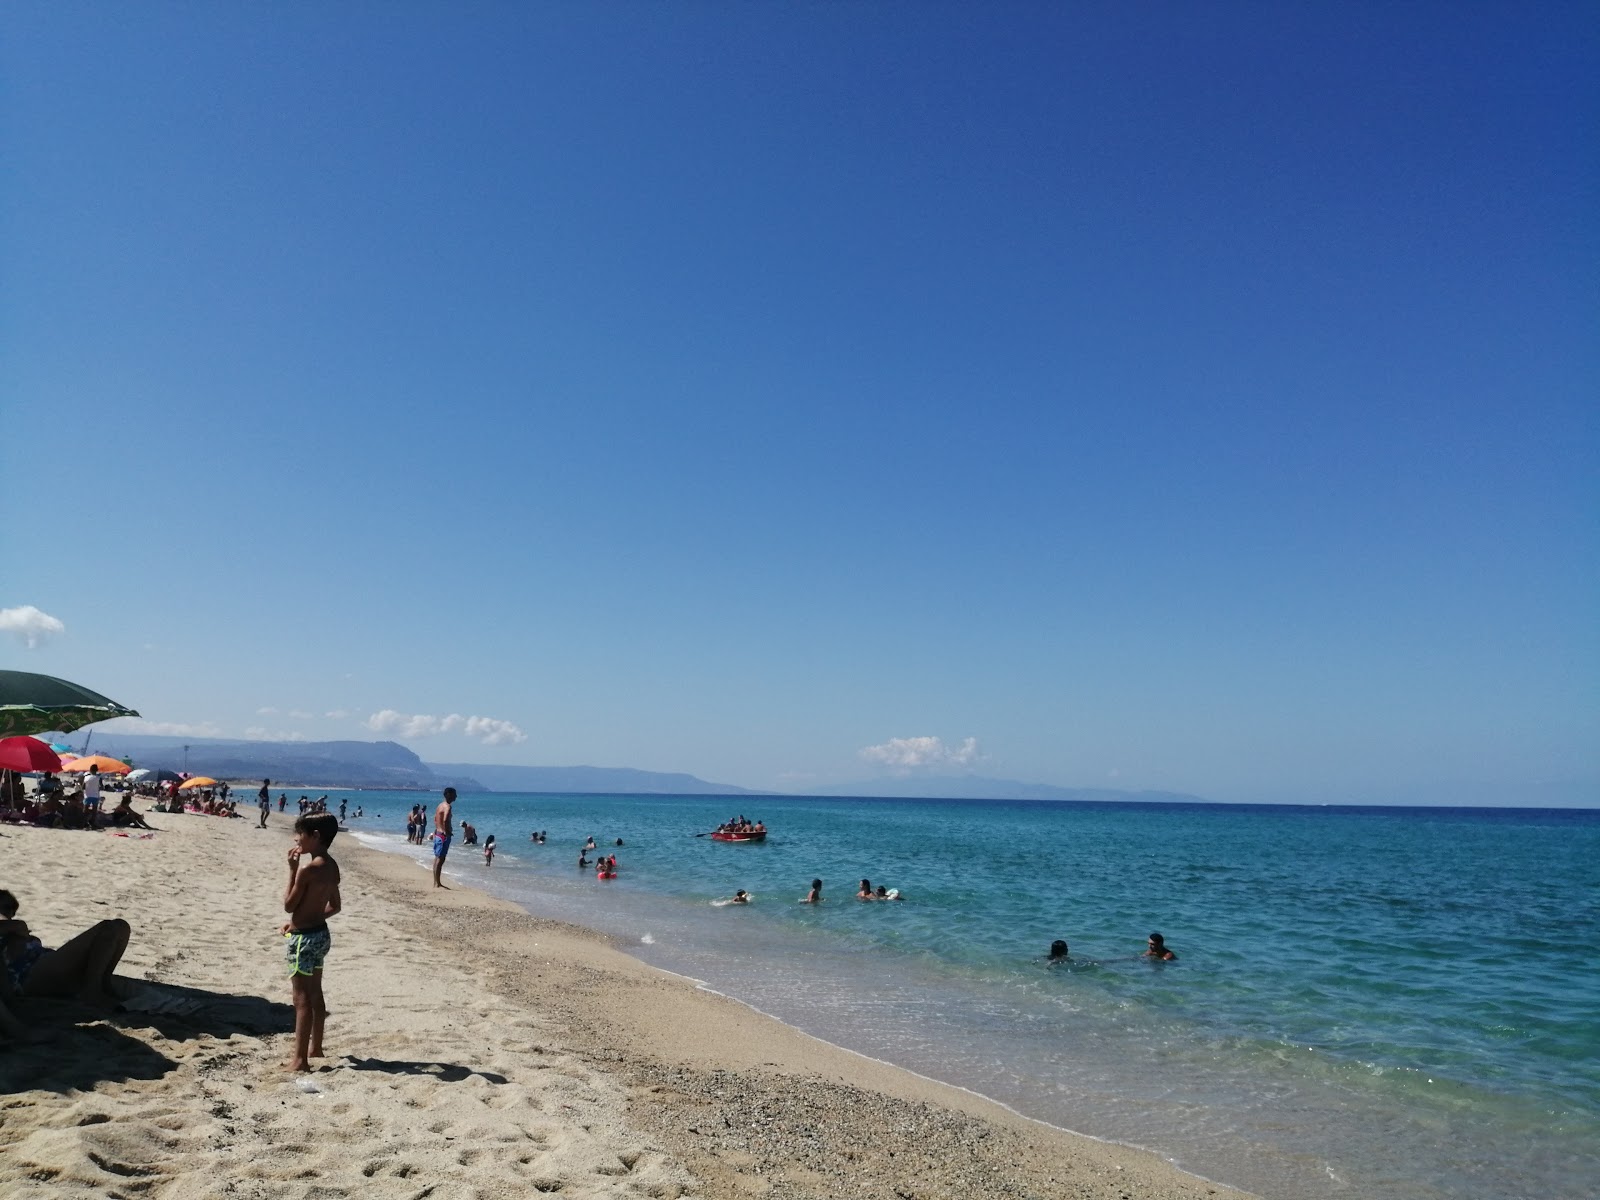 Foto af Spiaggia San Ferdinando med lys fint sand overflade